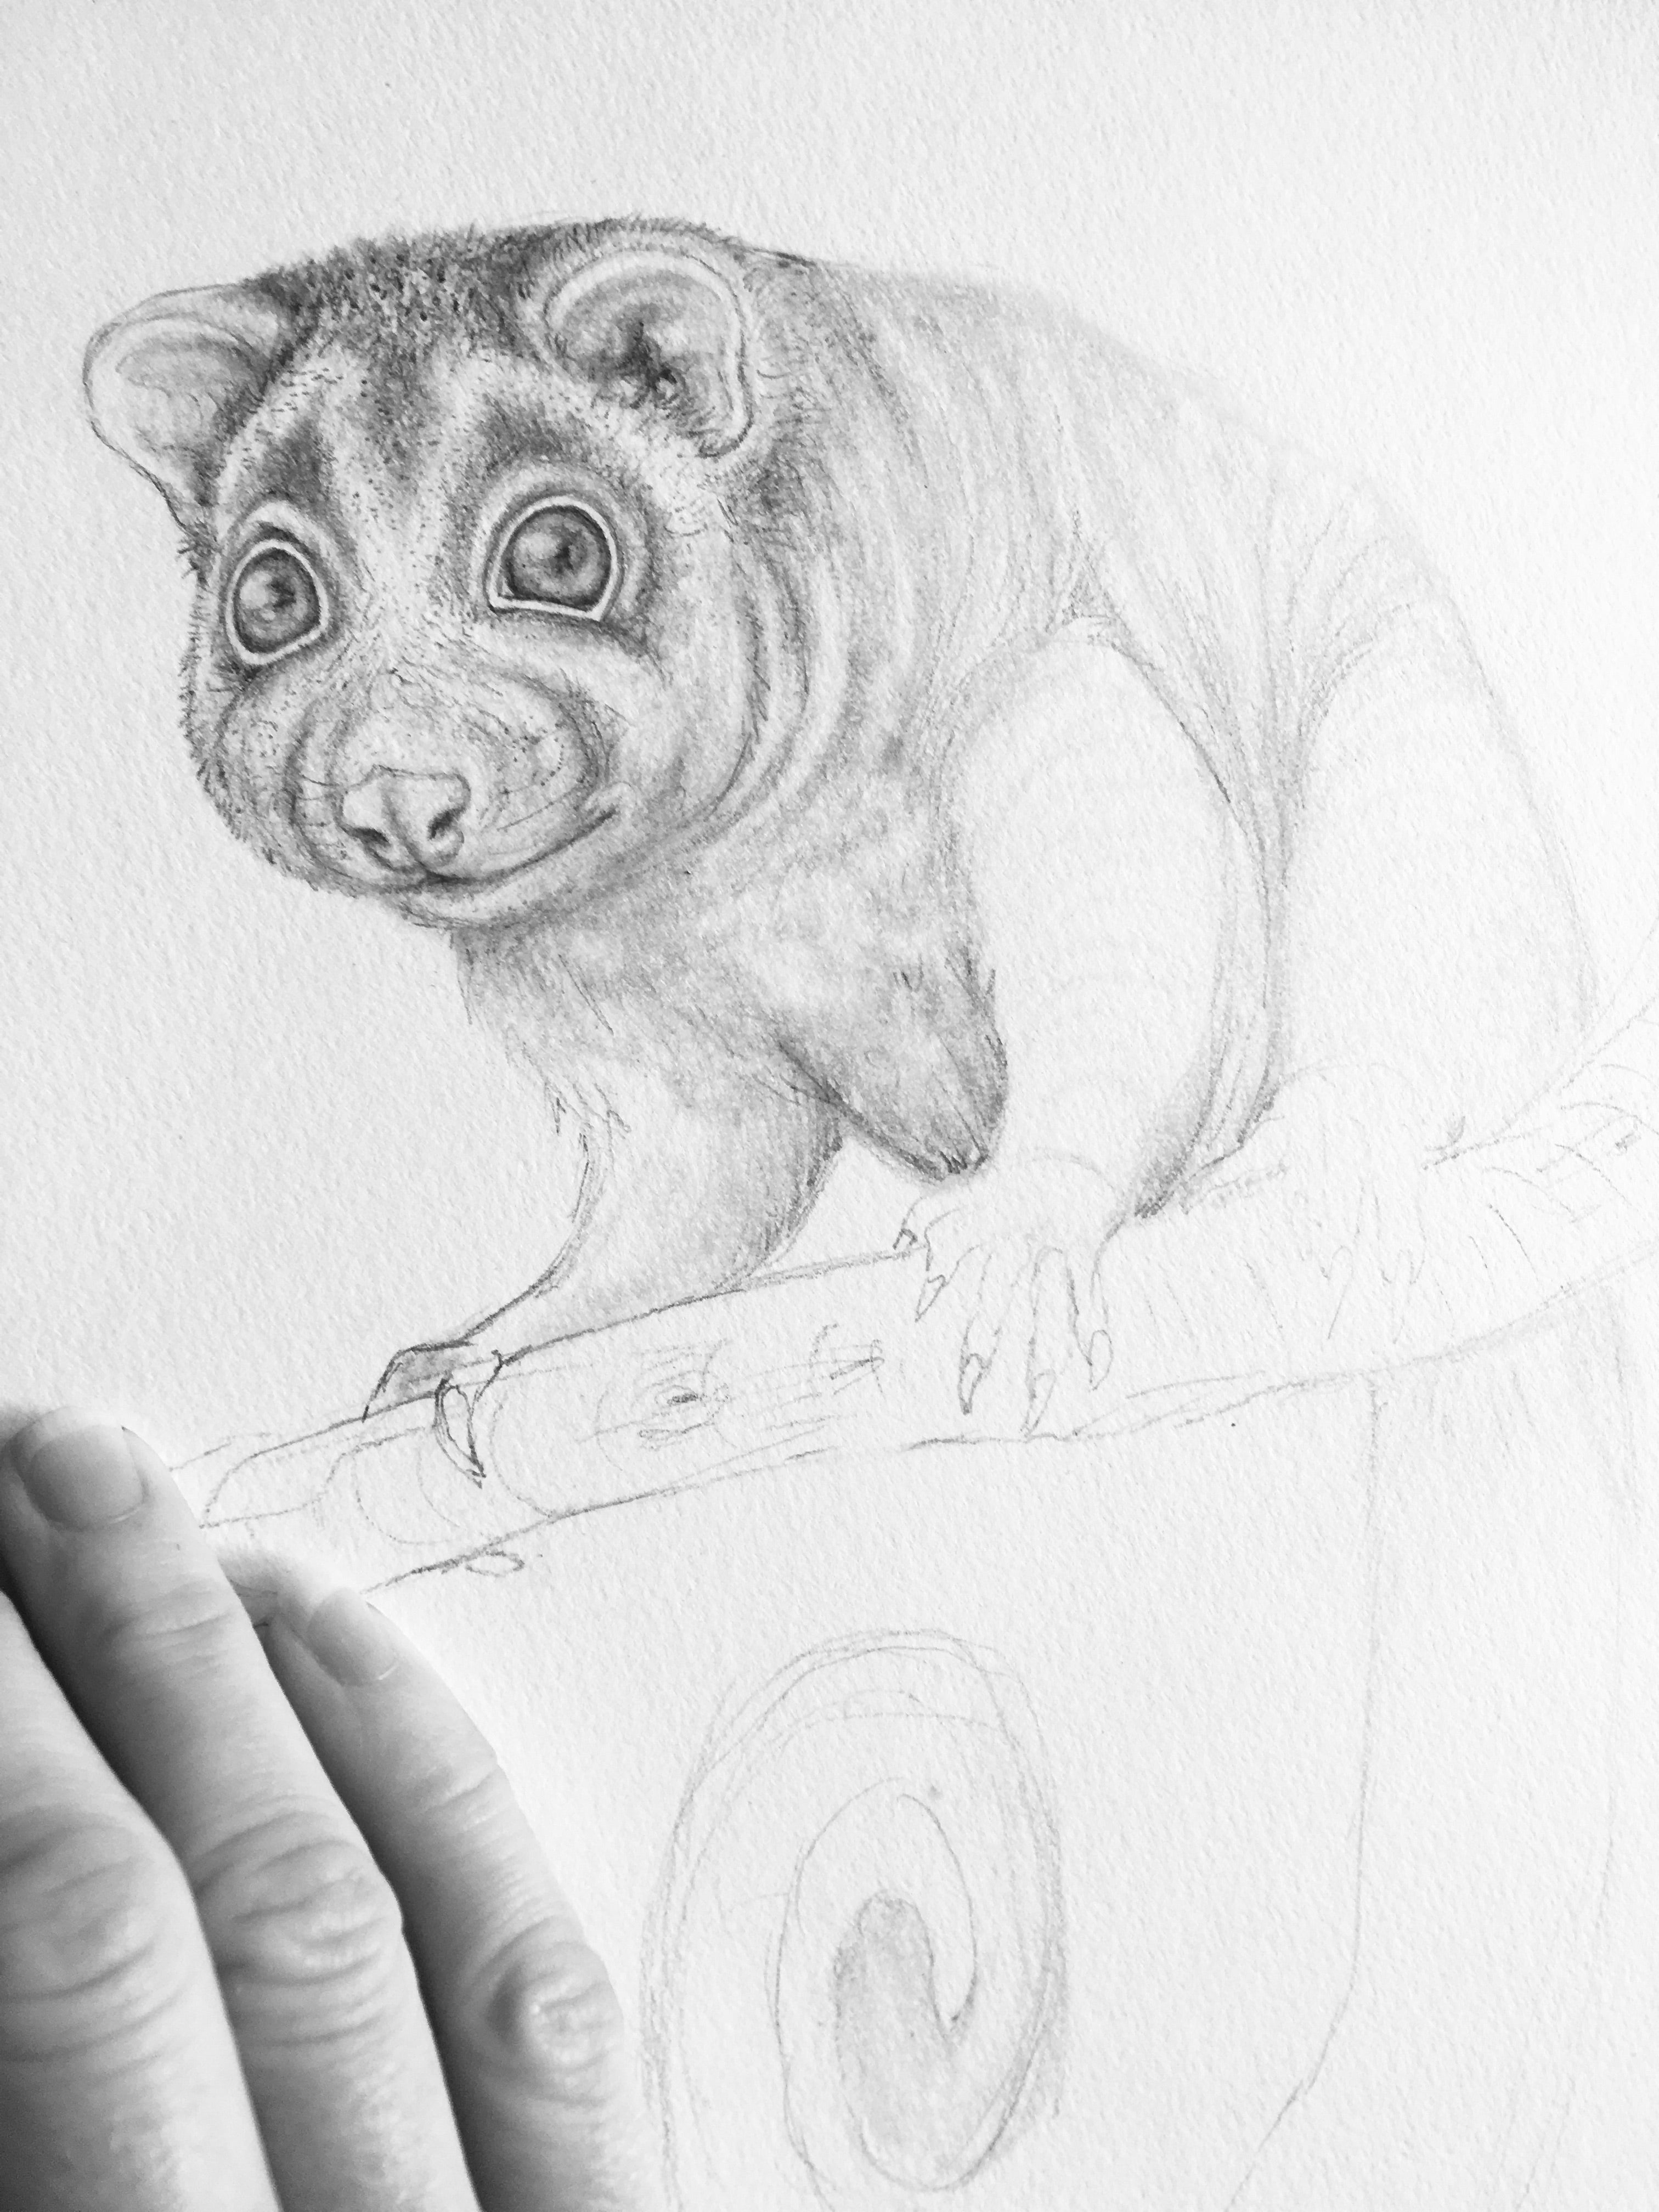 Ringtail Possum